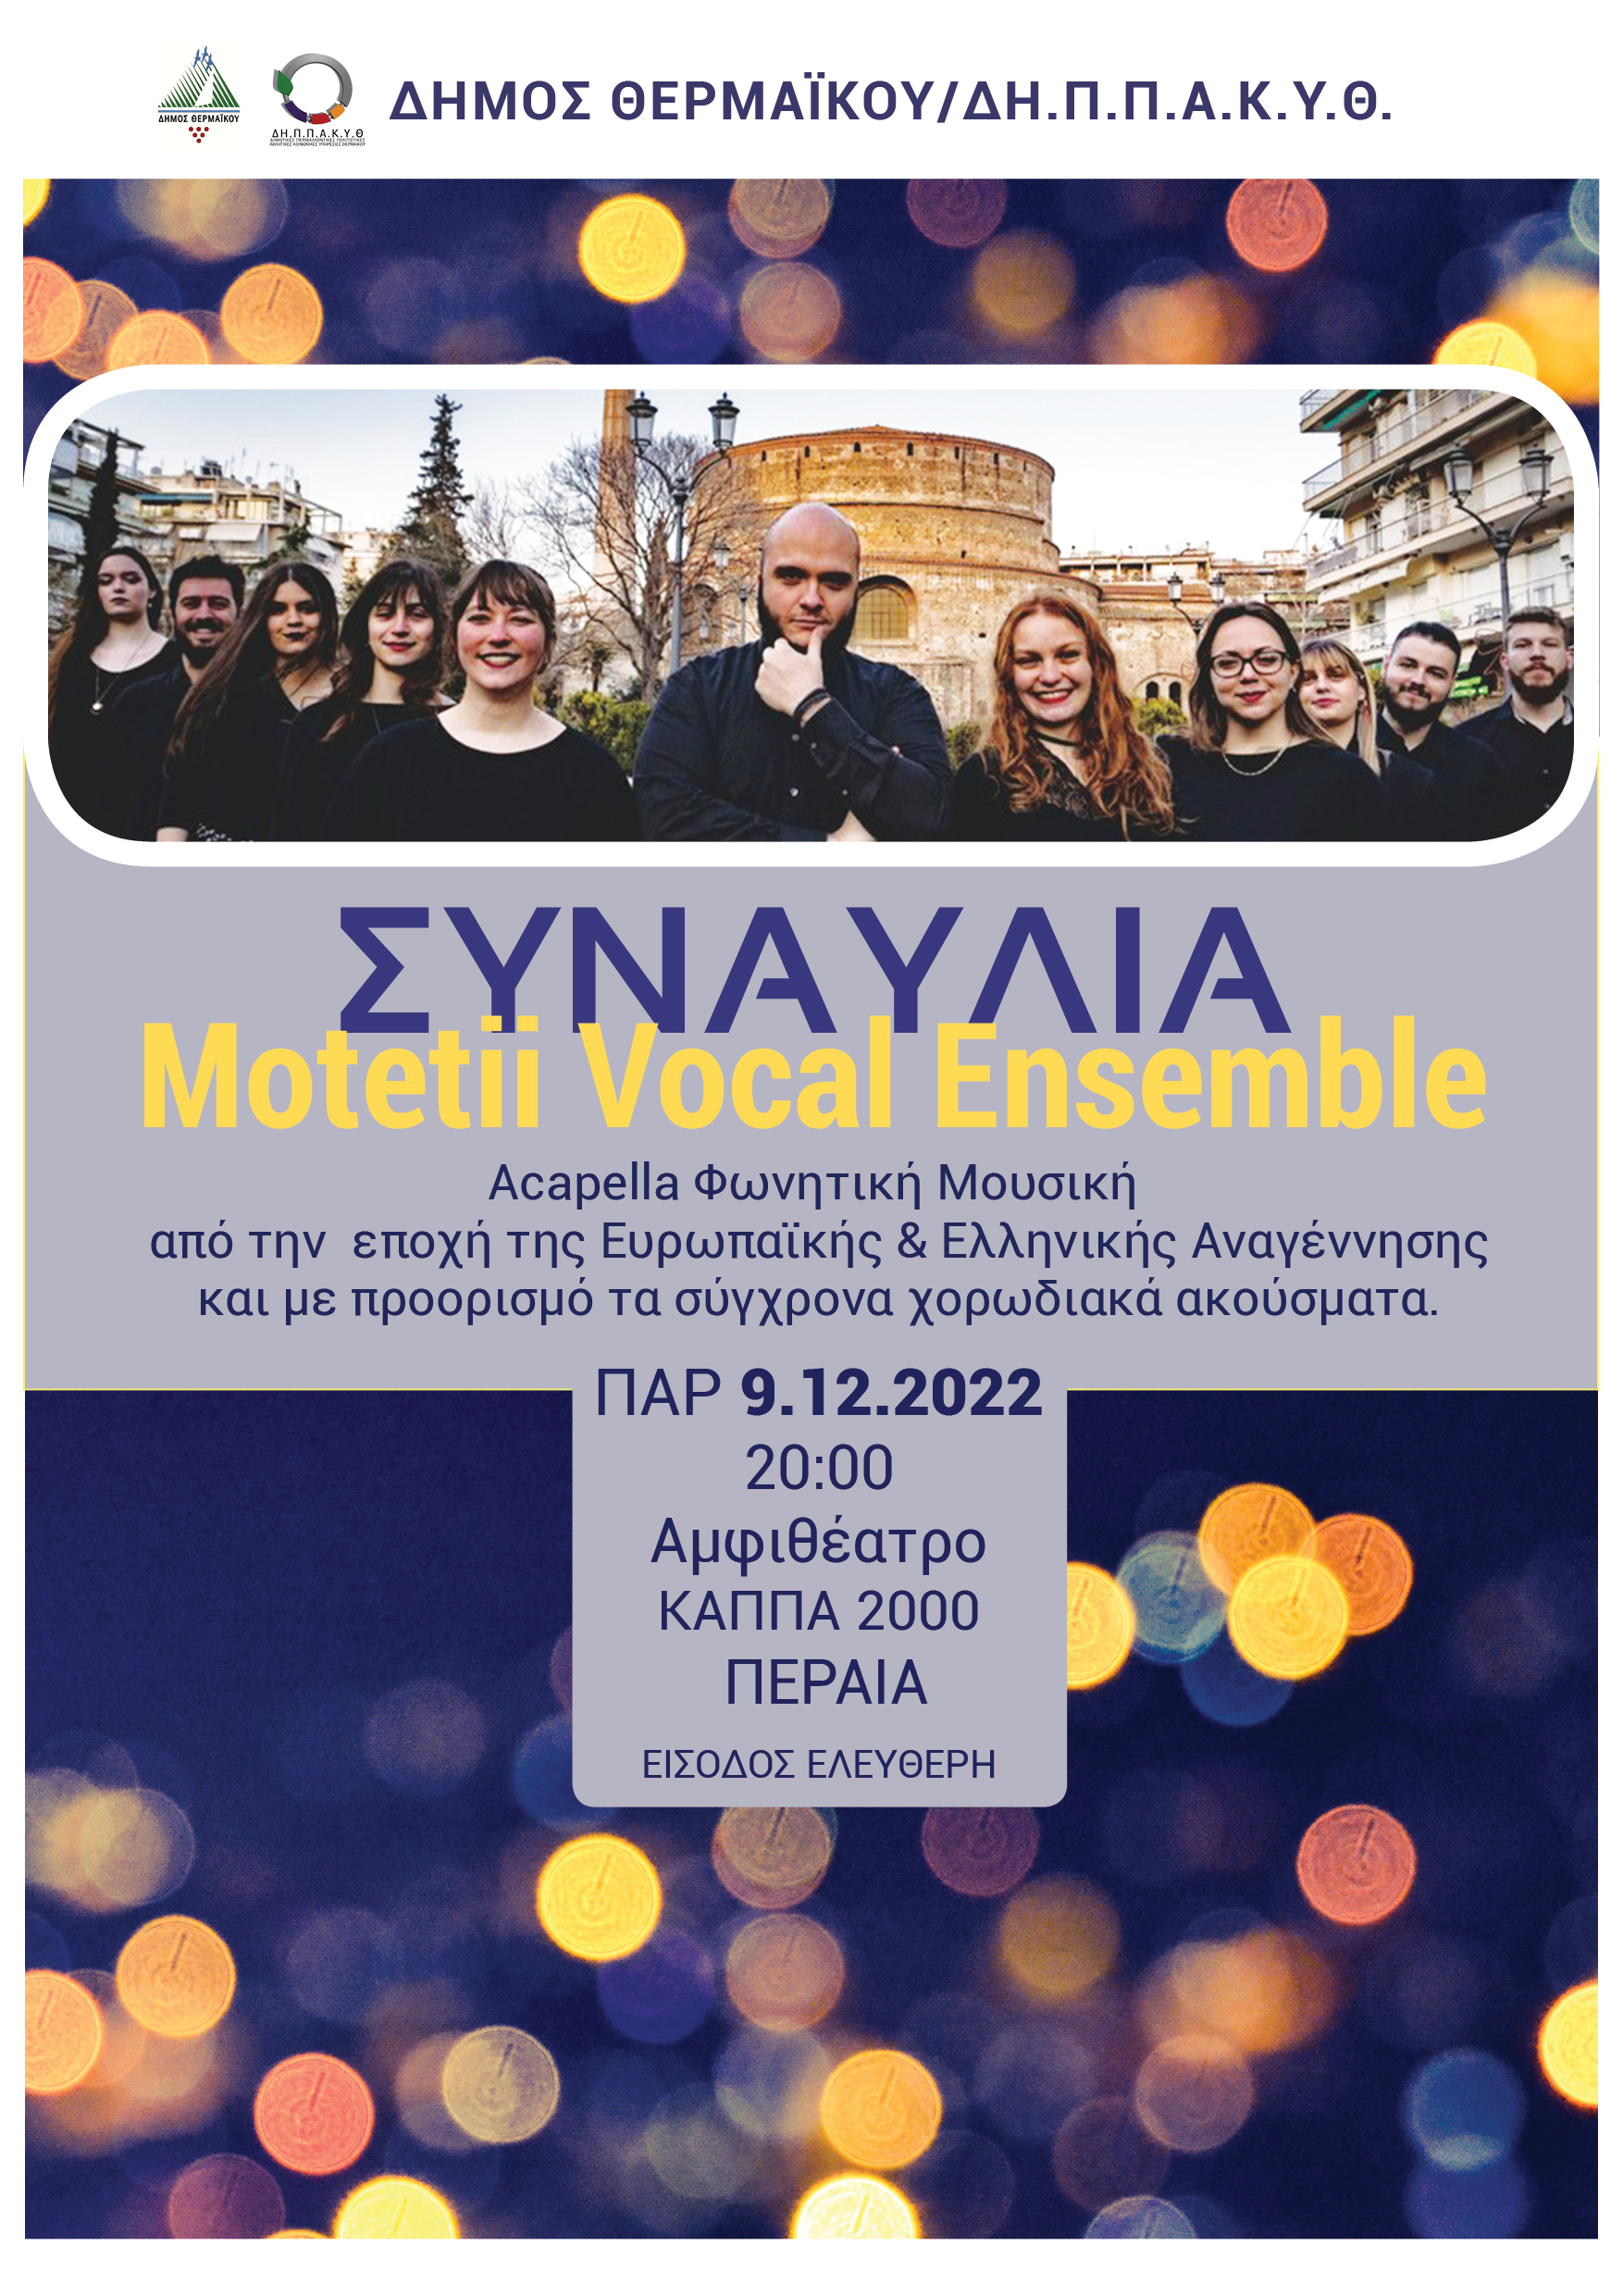 ΑΠΟΨΕ ΣΤΟ ΚΑΠΠΑ: Συναυλία Motetii Vocal Ensemble (20:00)